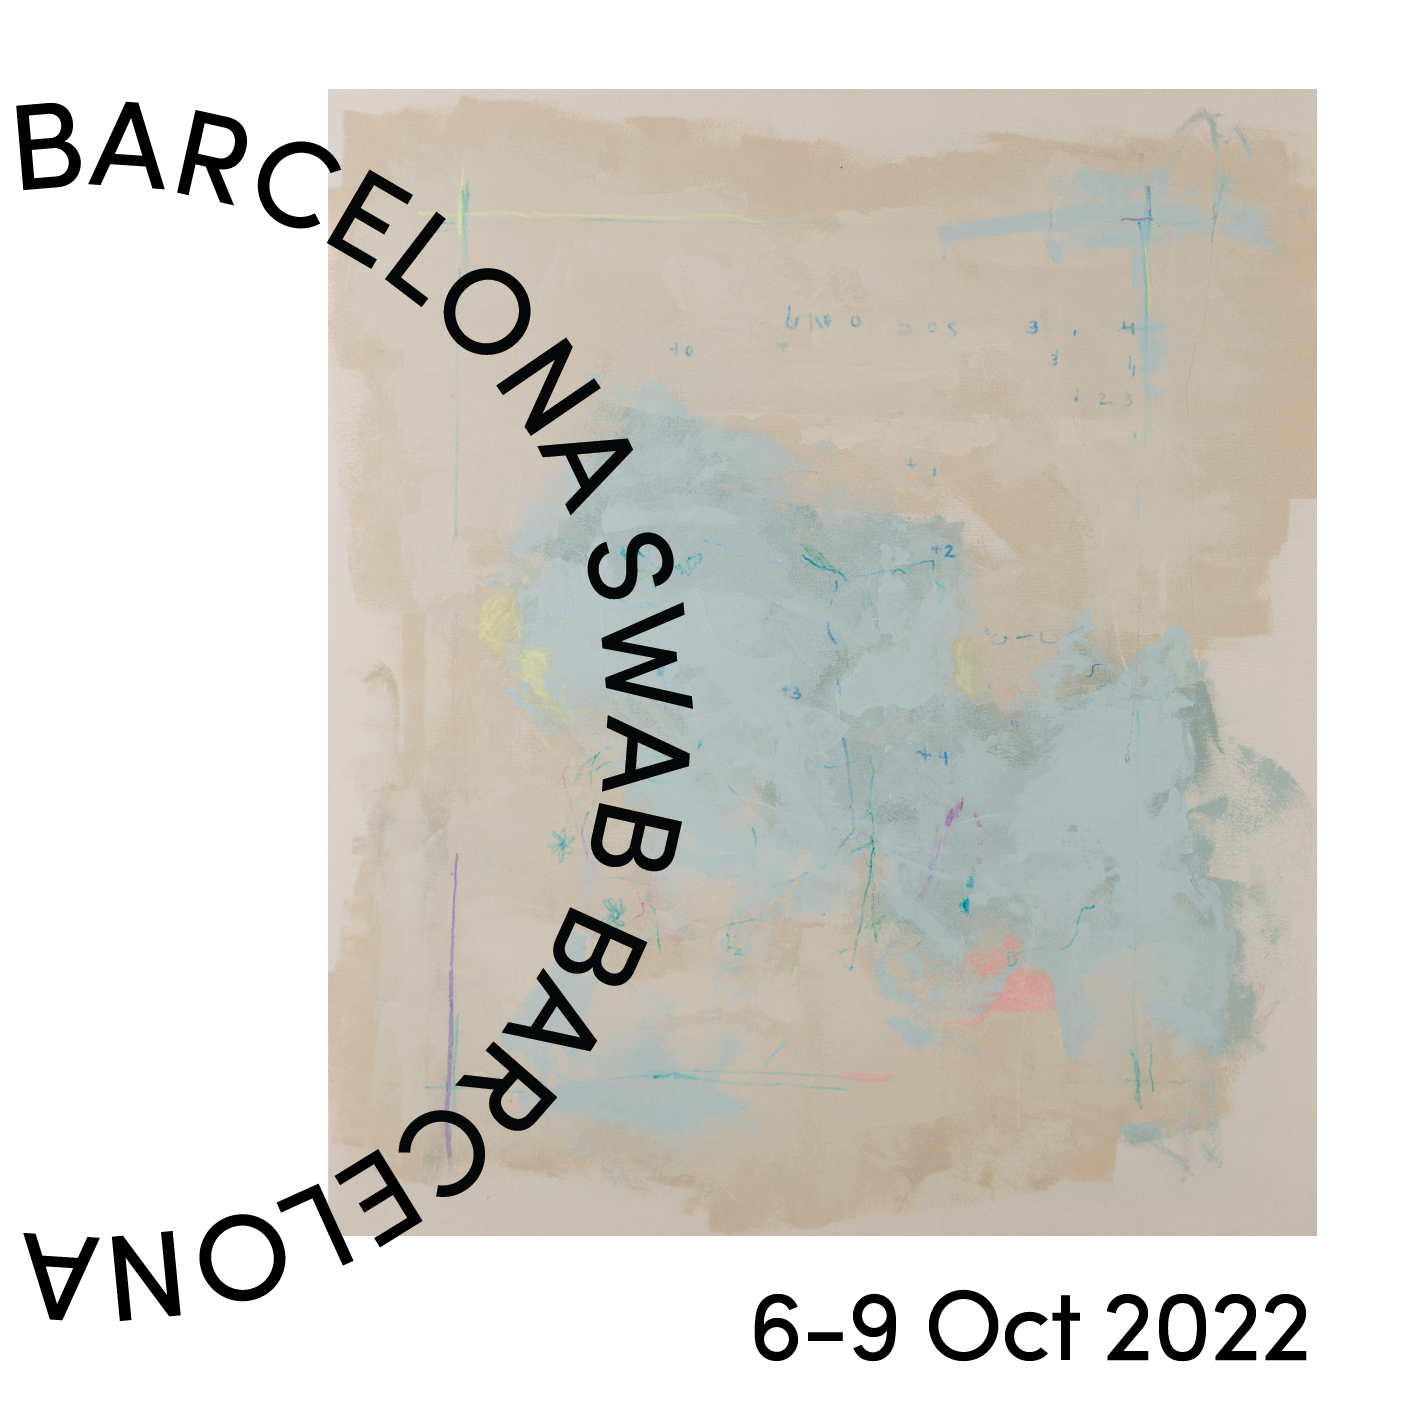 pigment 02 Pigment Gallery Galería de Arte en Barcelona SWAB Barcelona